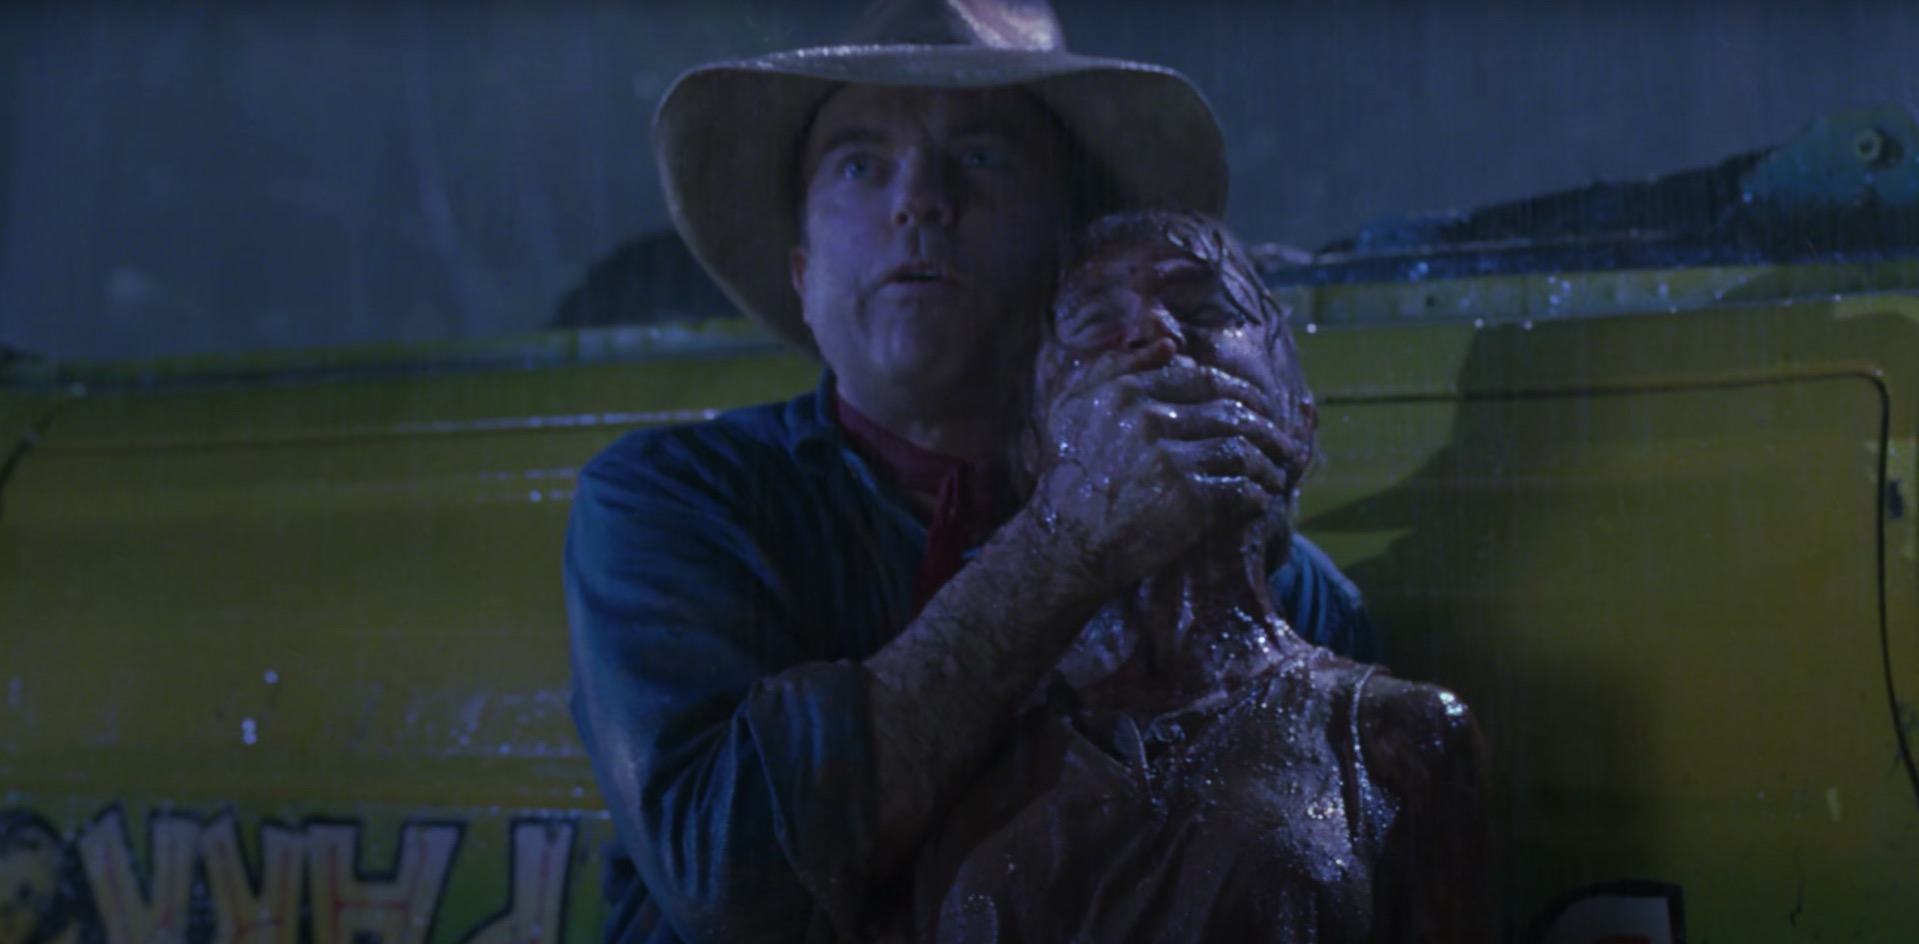 Jurassic Park : le tournage aurait pu prendre une tournure tragique selon Sam Neill